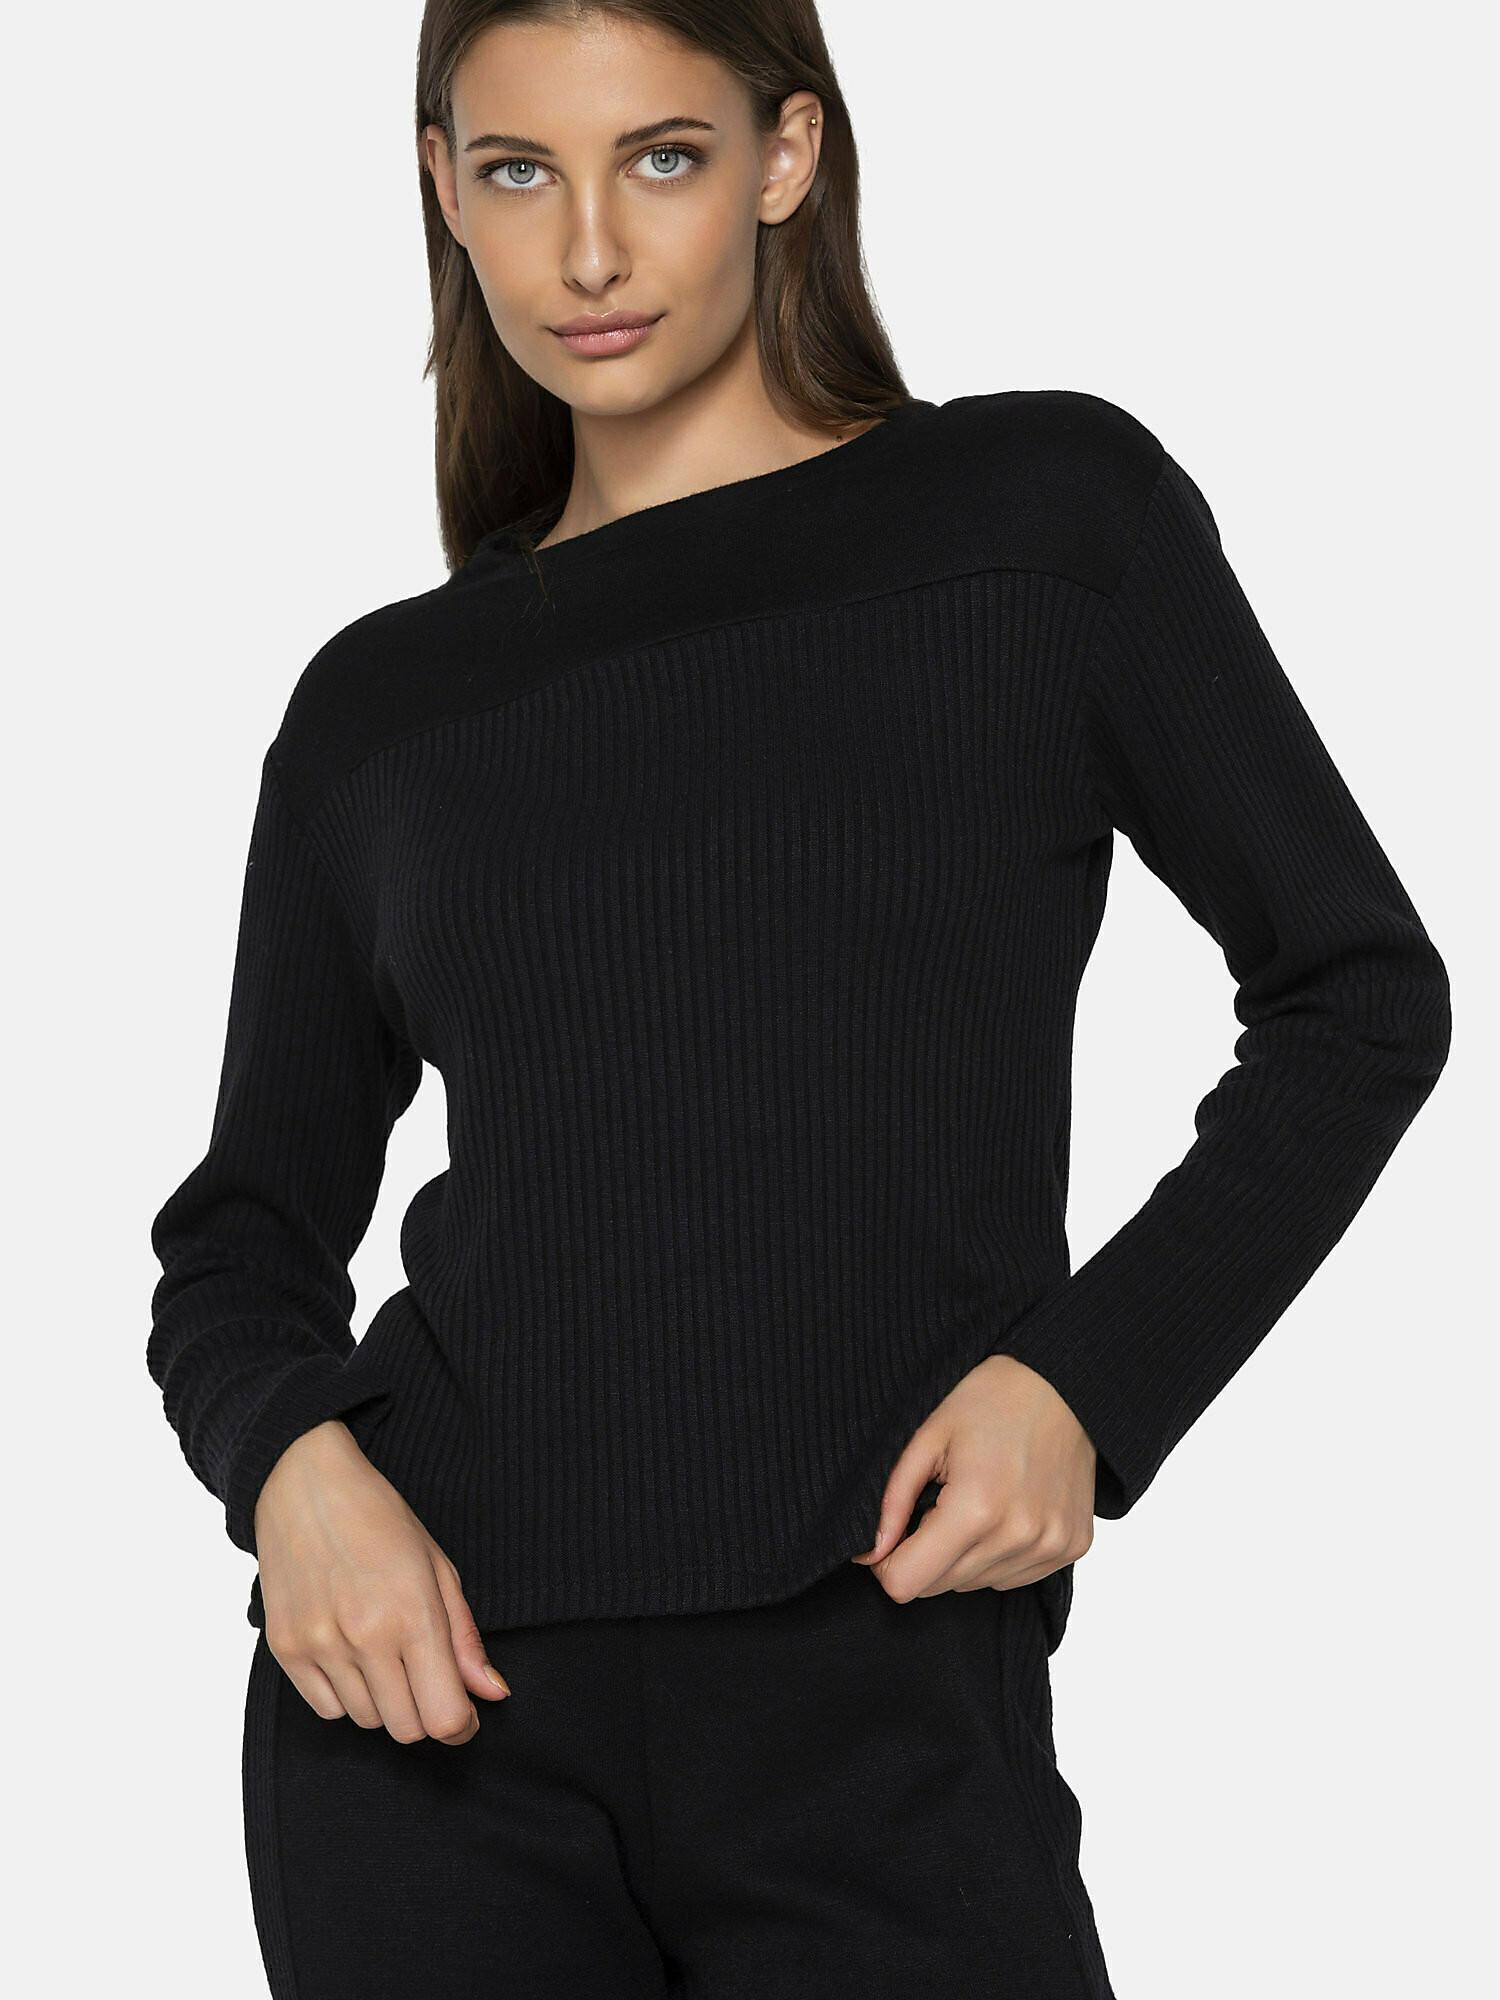 Sweatshirt Connected Damen Schwarz XL von Luna